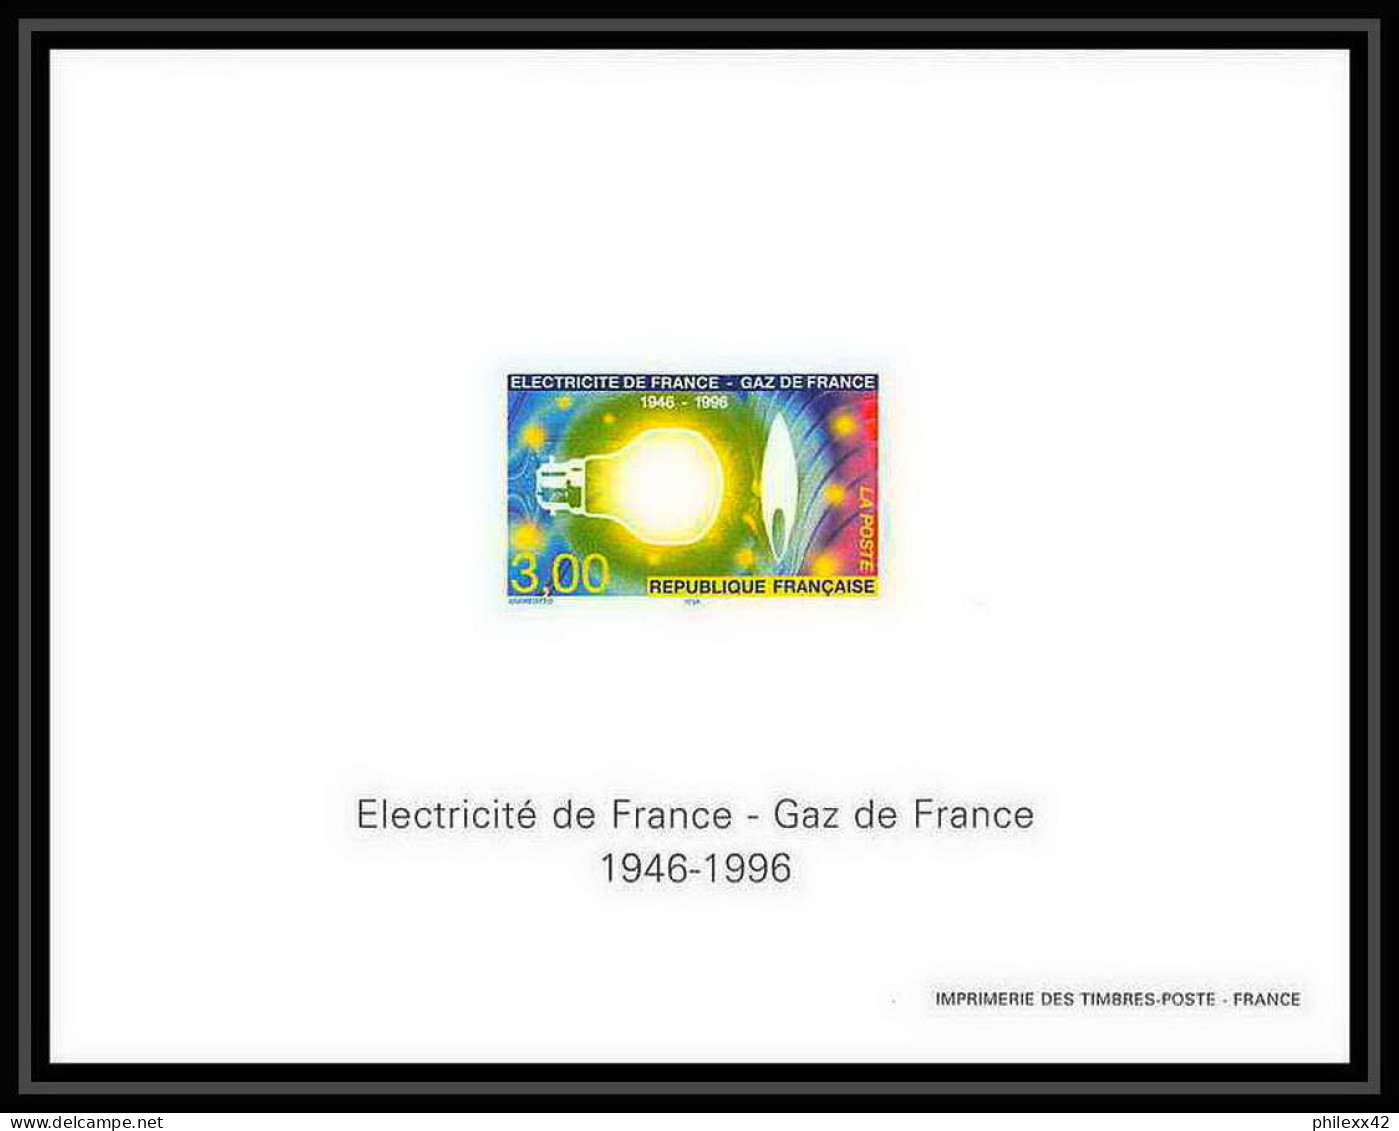 France - Bloc BF N°2996 Cote 125 Electricité Gaz De France Electicity Energy Non Dentelé ** MNH Imperf Deluxe Proof - Elettricità